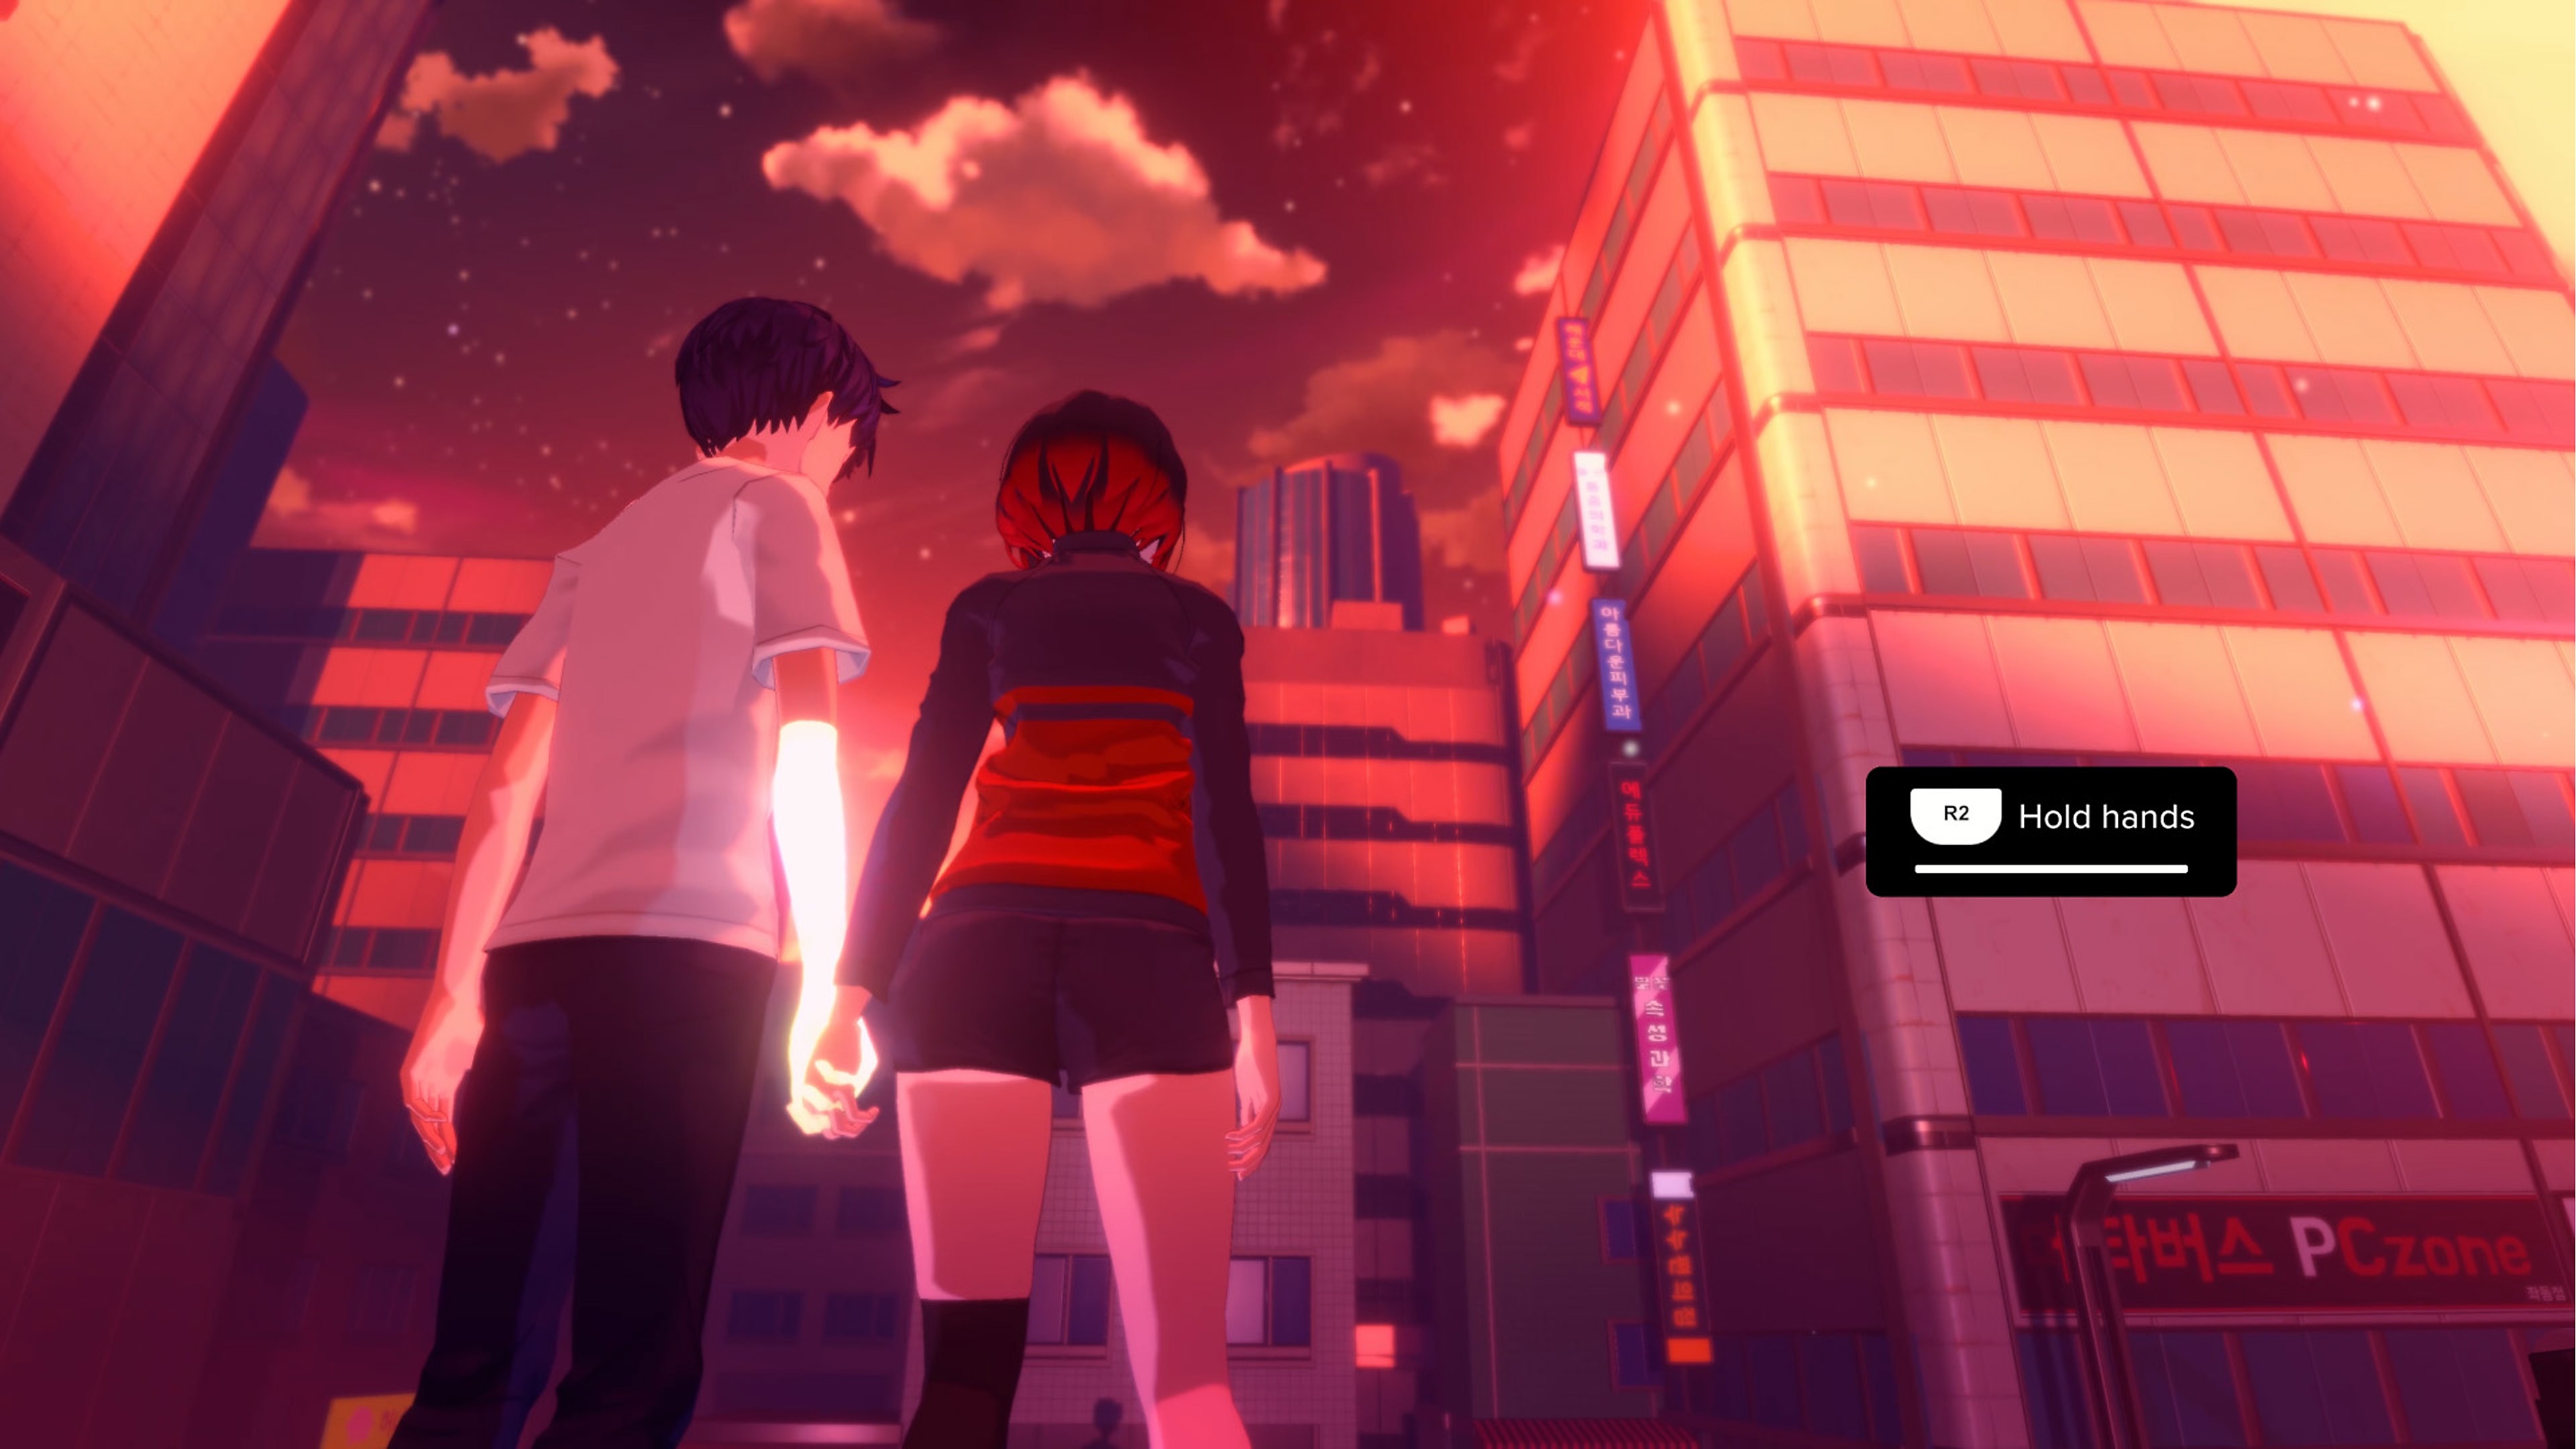 Eternights-skærmbillede med to figurer i highschool-alderen, der holder i hånd foran en by med skyskrabere.